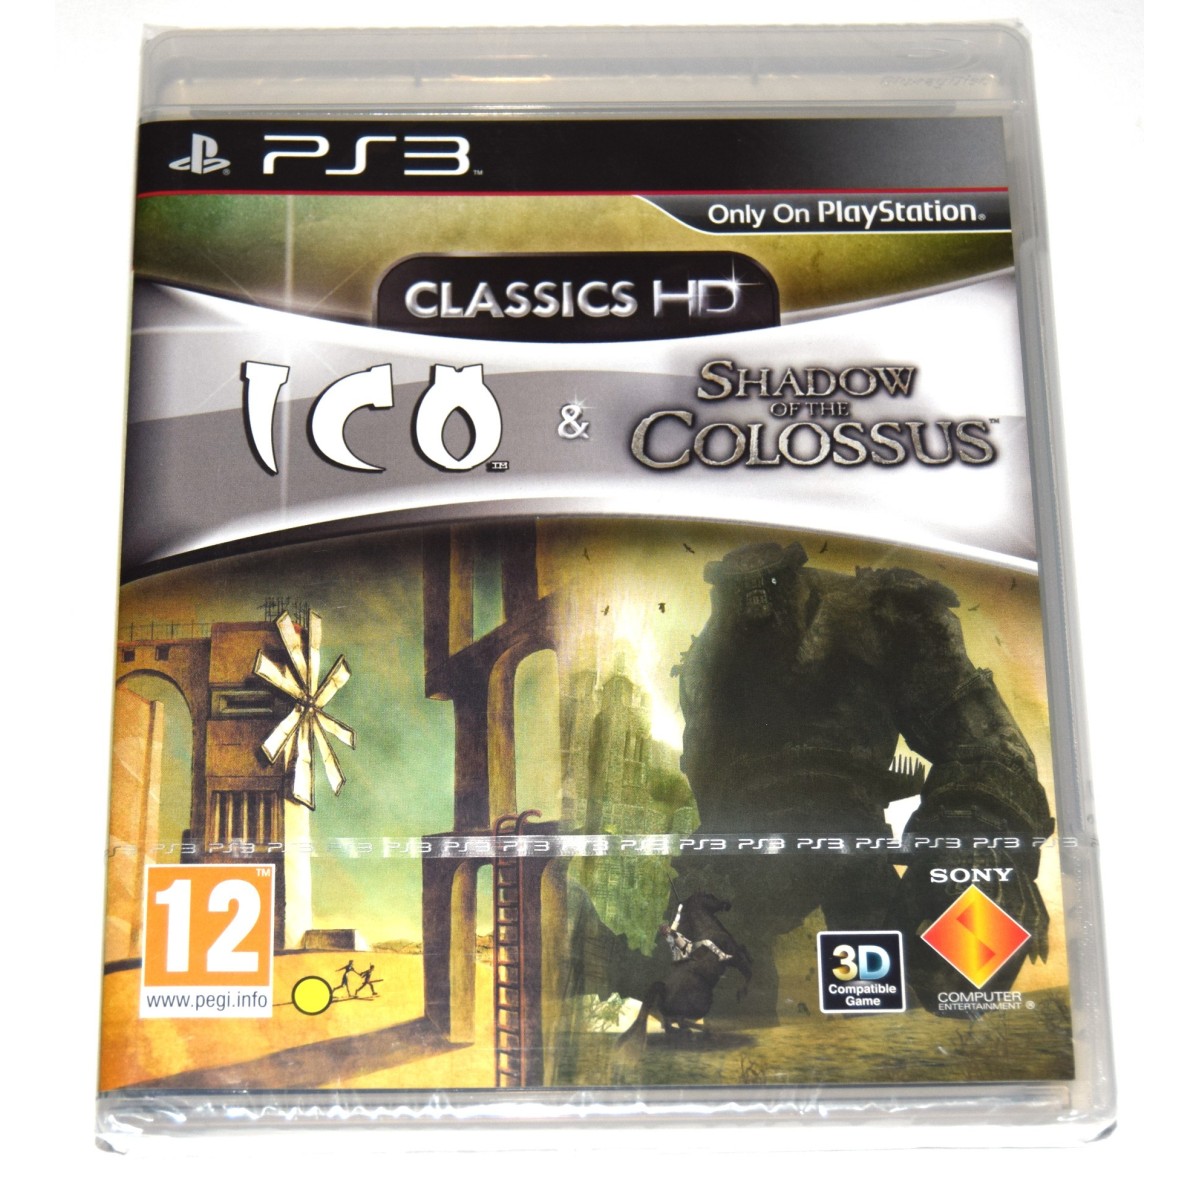 Juego Playstation ICO Shadow Of The Colossus Nuevo